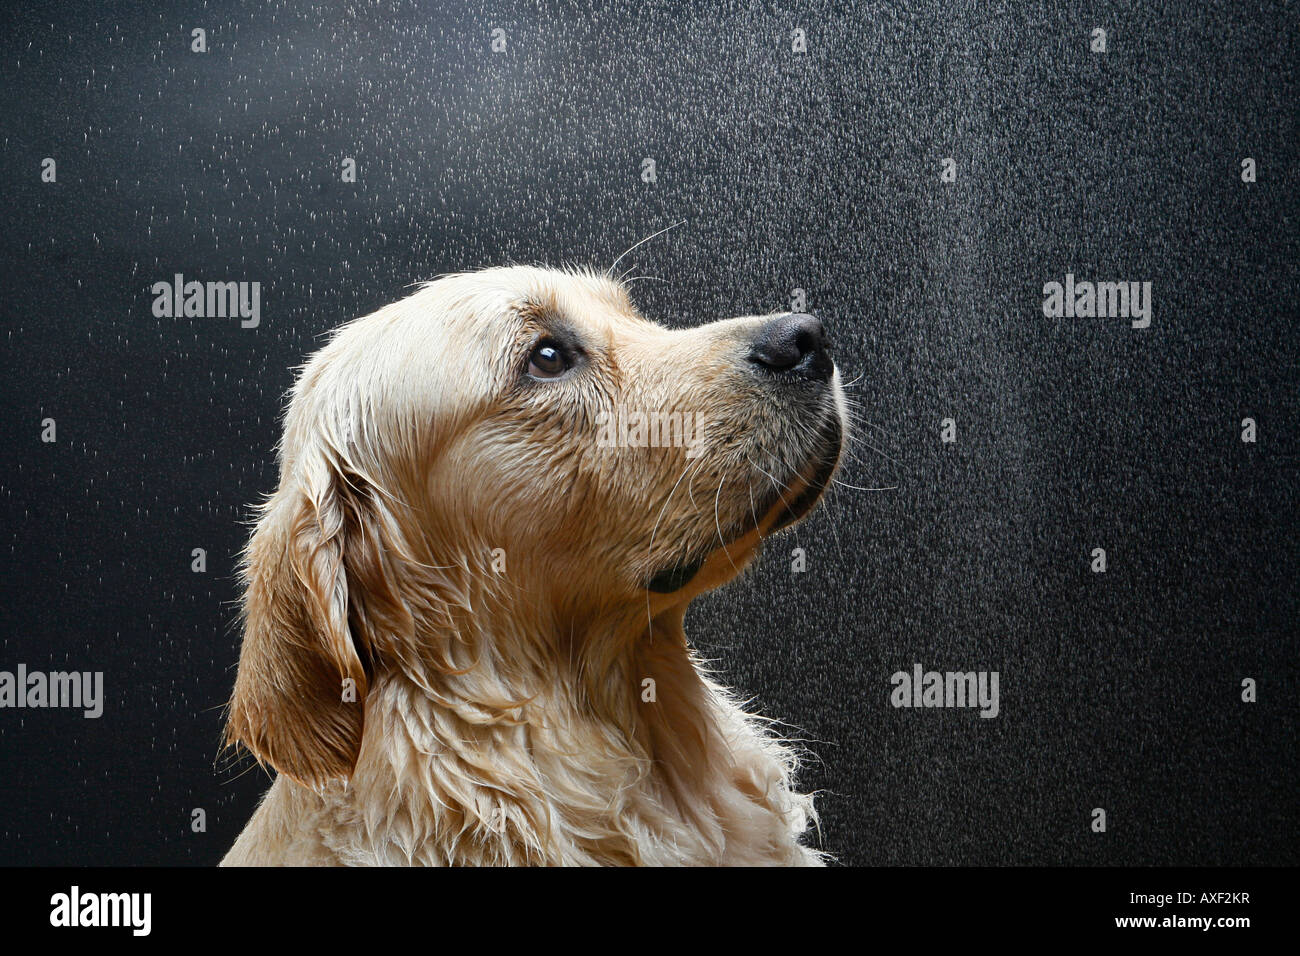 Golden Retriever, Retrato de adulto, perro mojado. Alemania Foto de stock